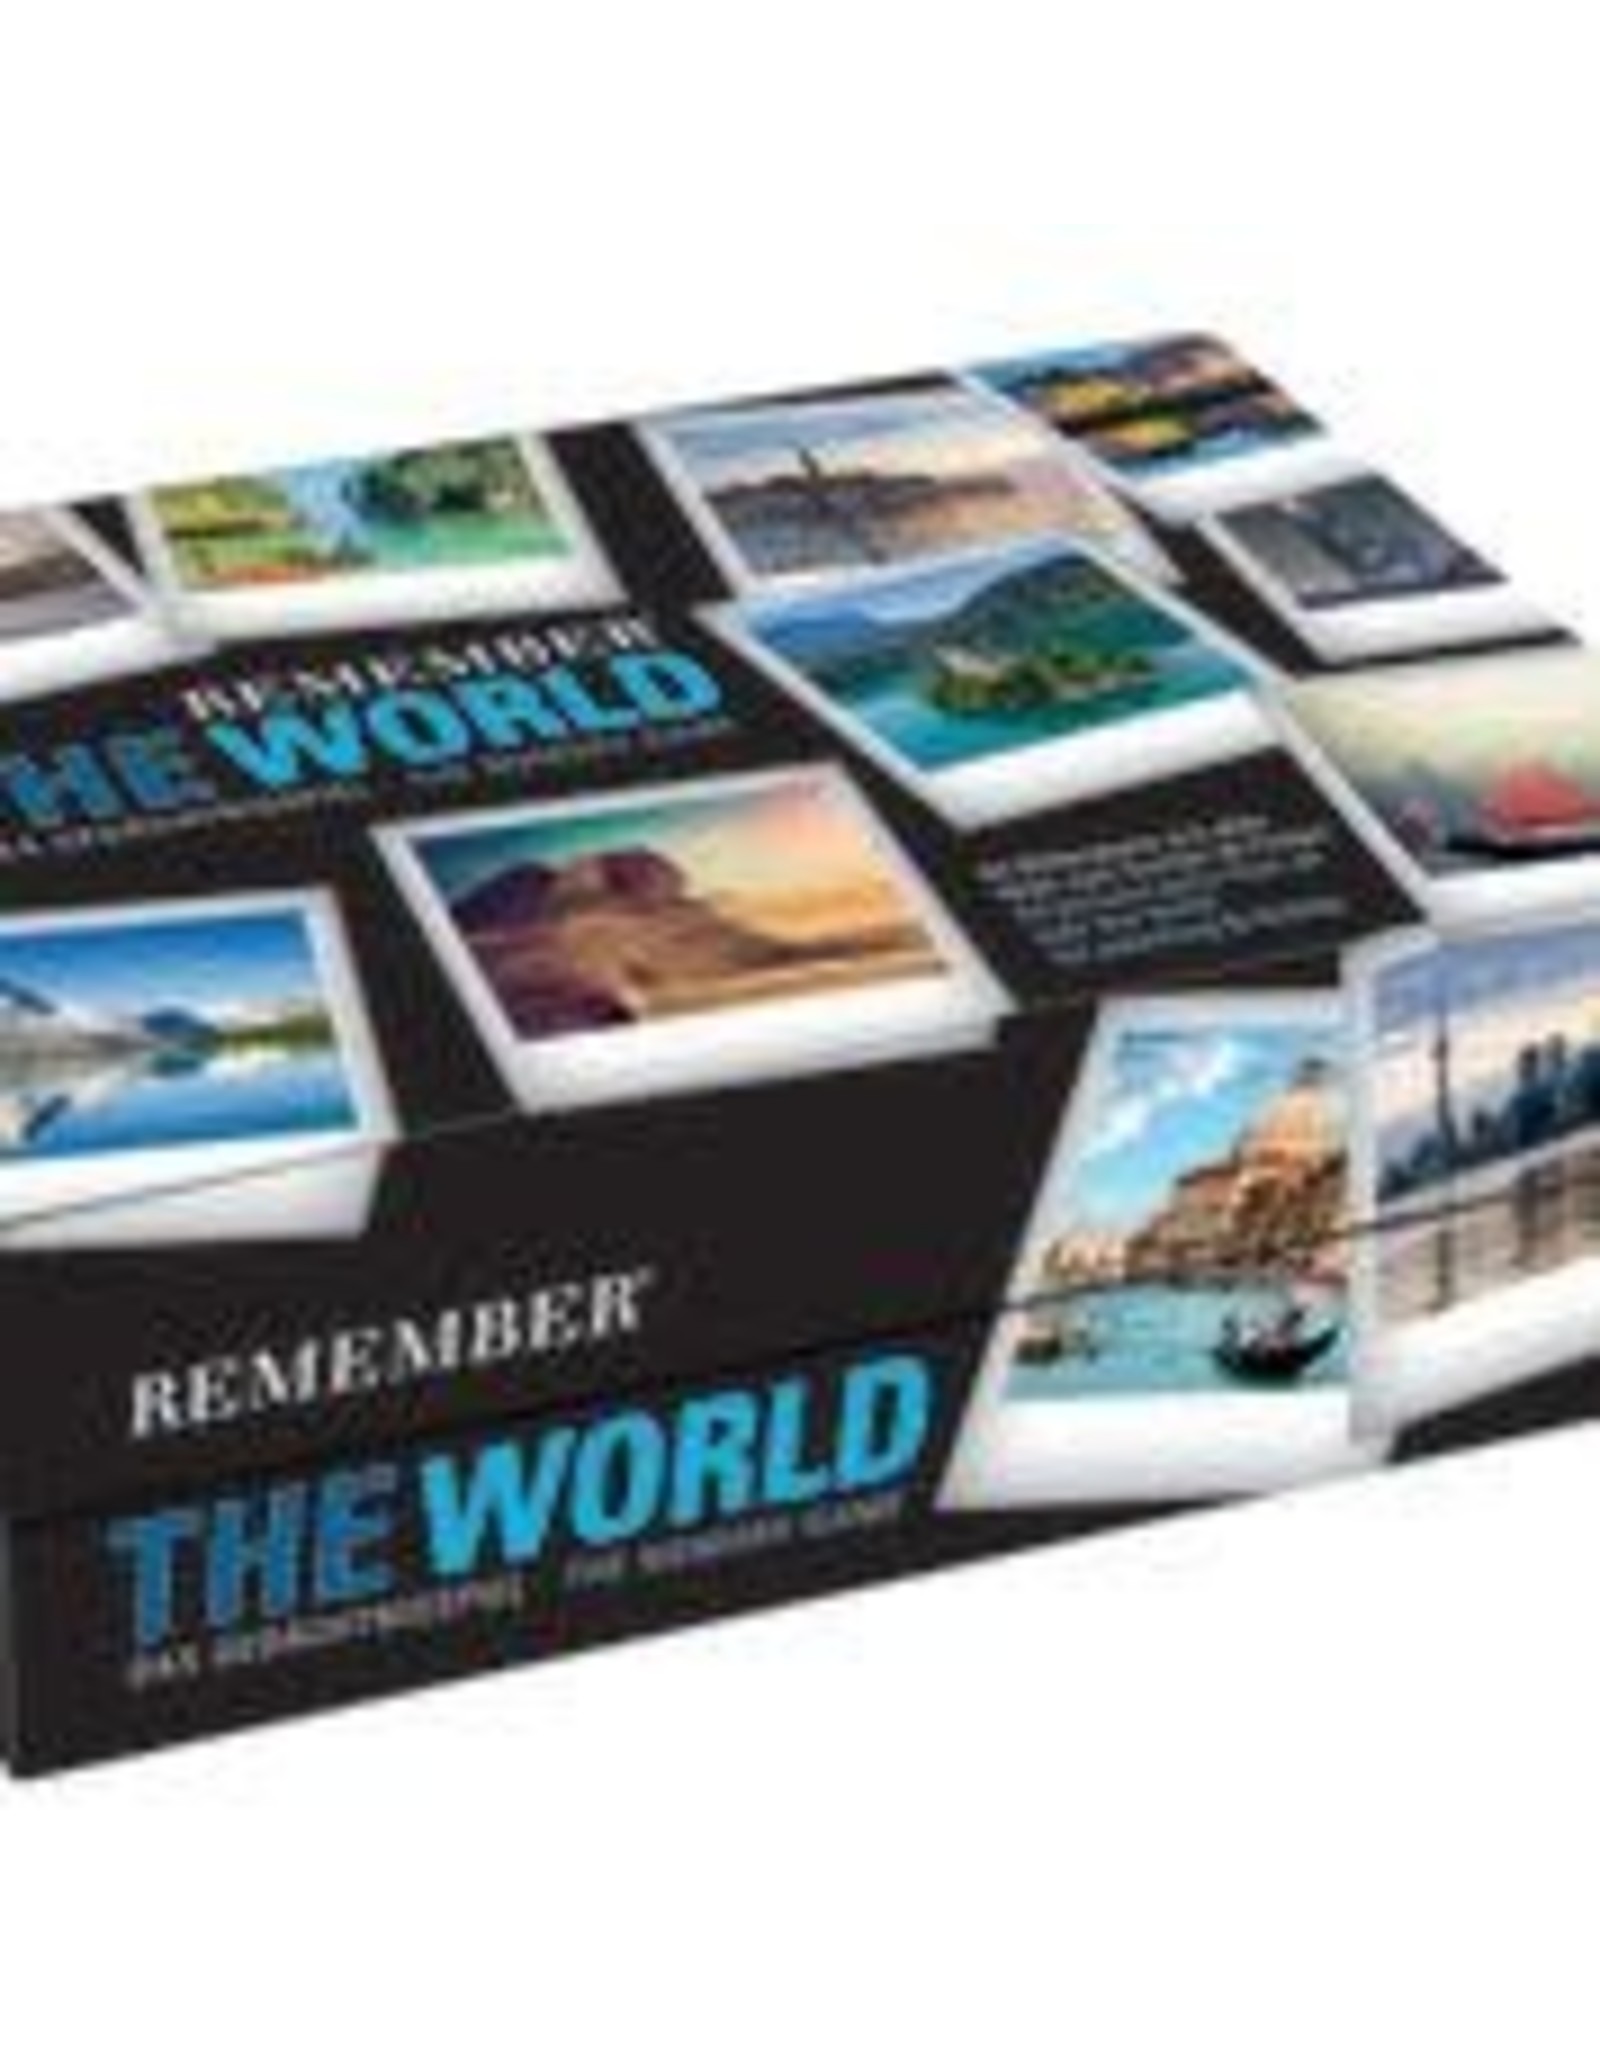 Remember Memory spel met foto's van over de hele wereld